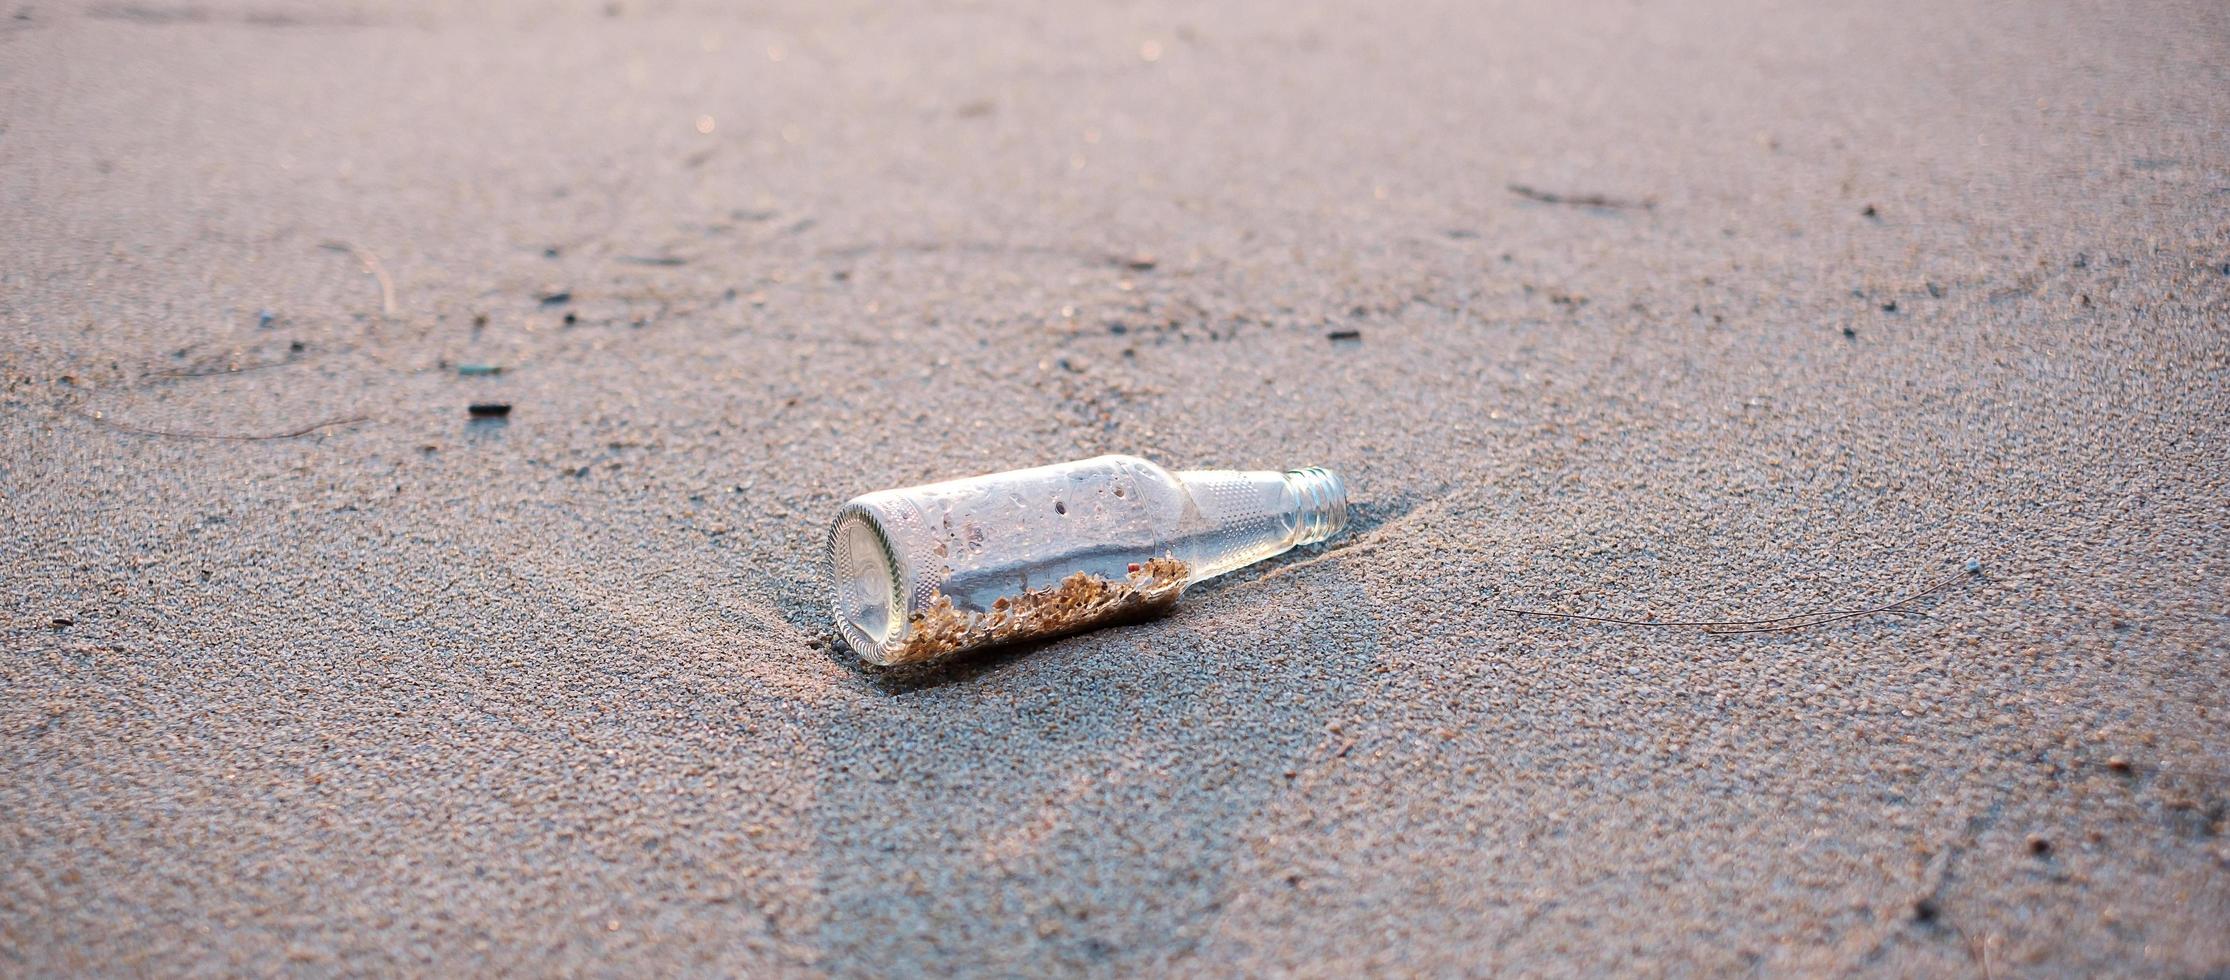 lixo de garrafa de vidro na praia. ecologia, meio ambiente, poluição e conceito de problema ecológico foto